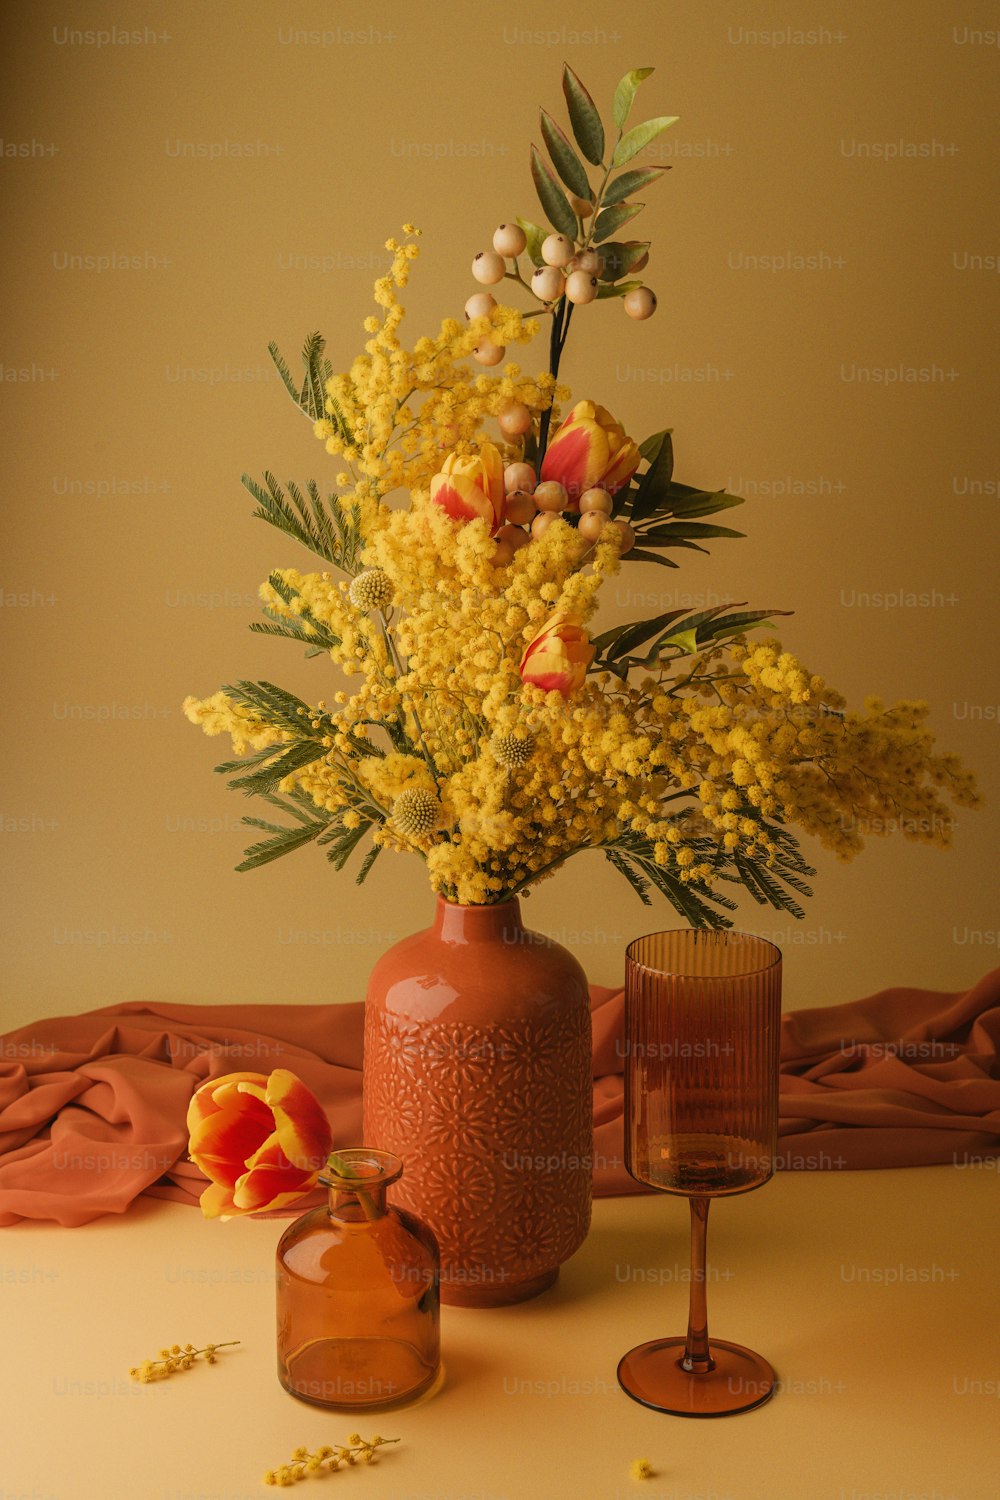 Un jarrón lleno de flores amarillas junto a una copa de vino